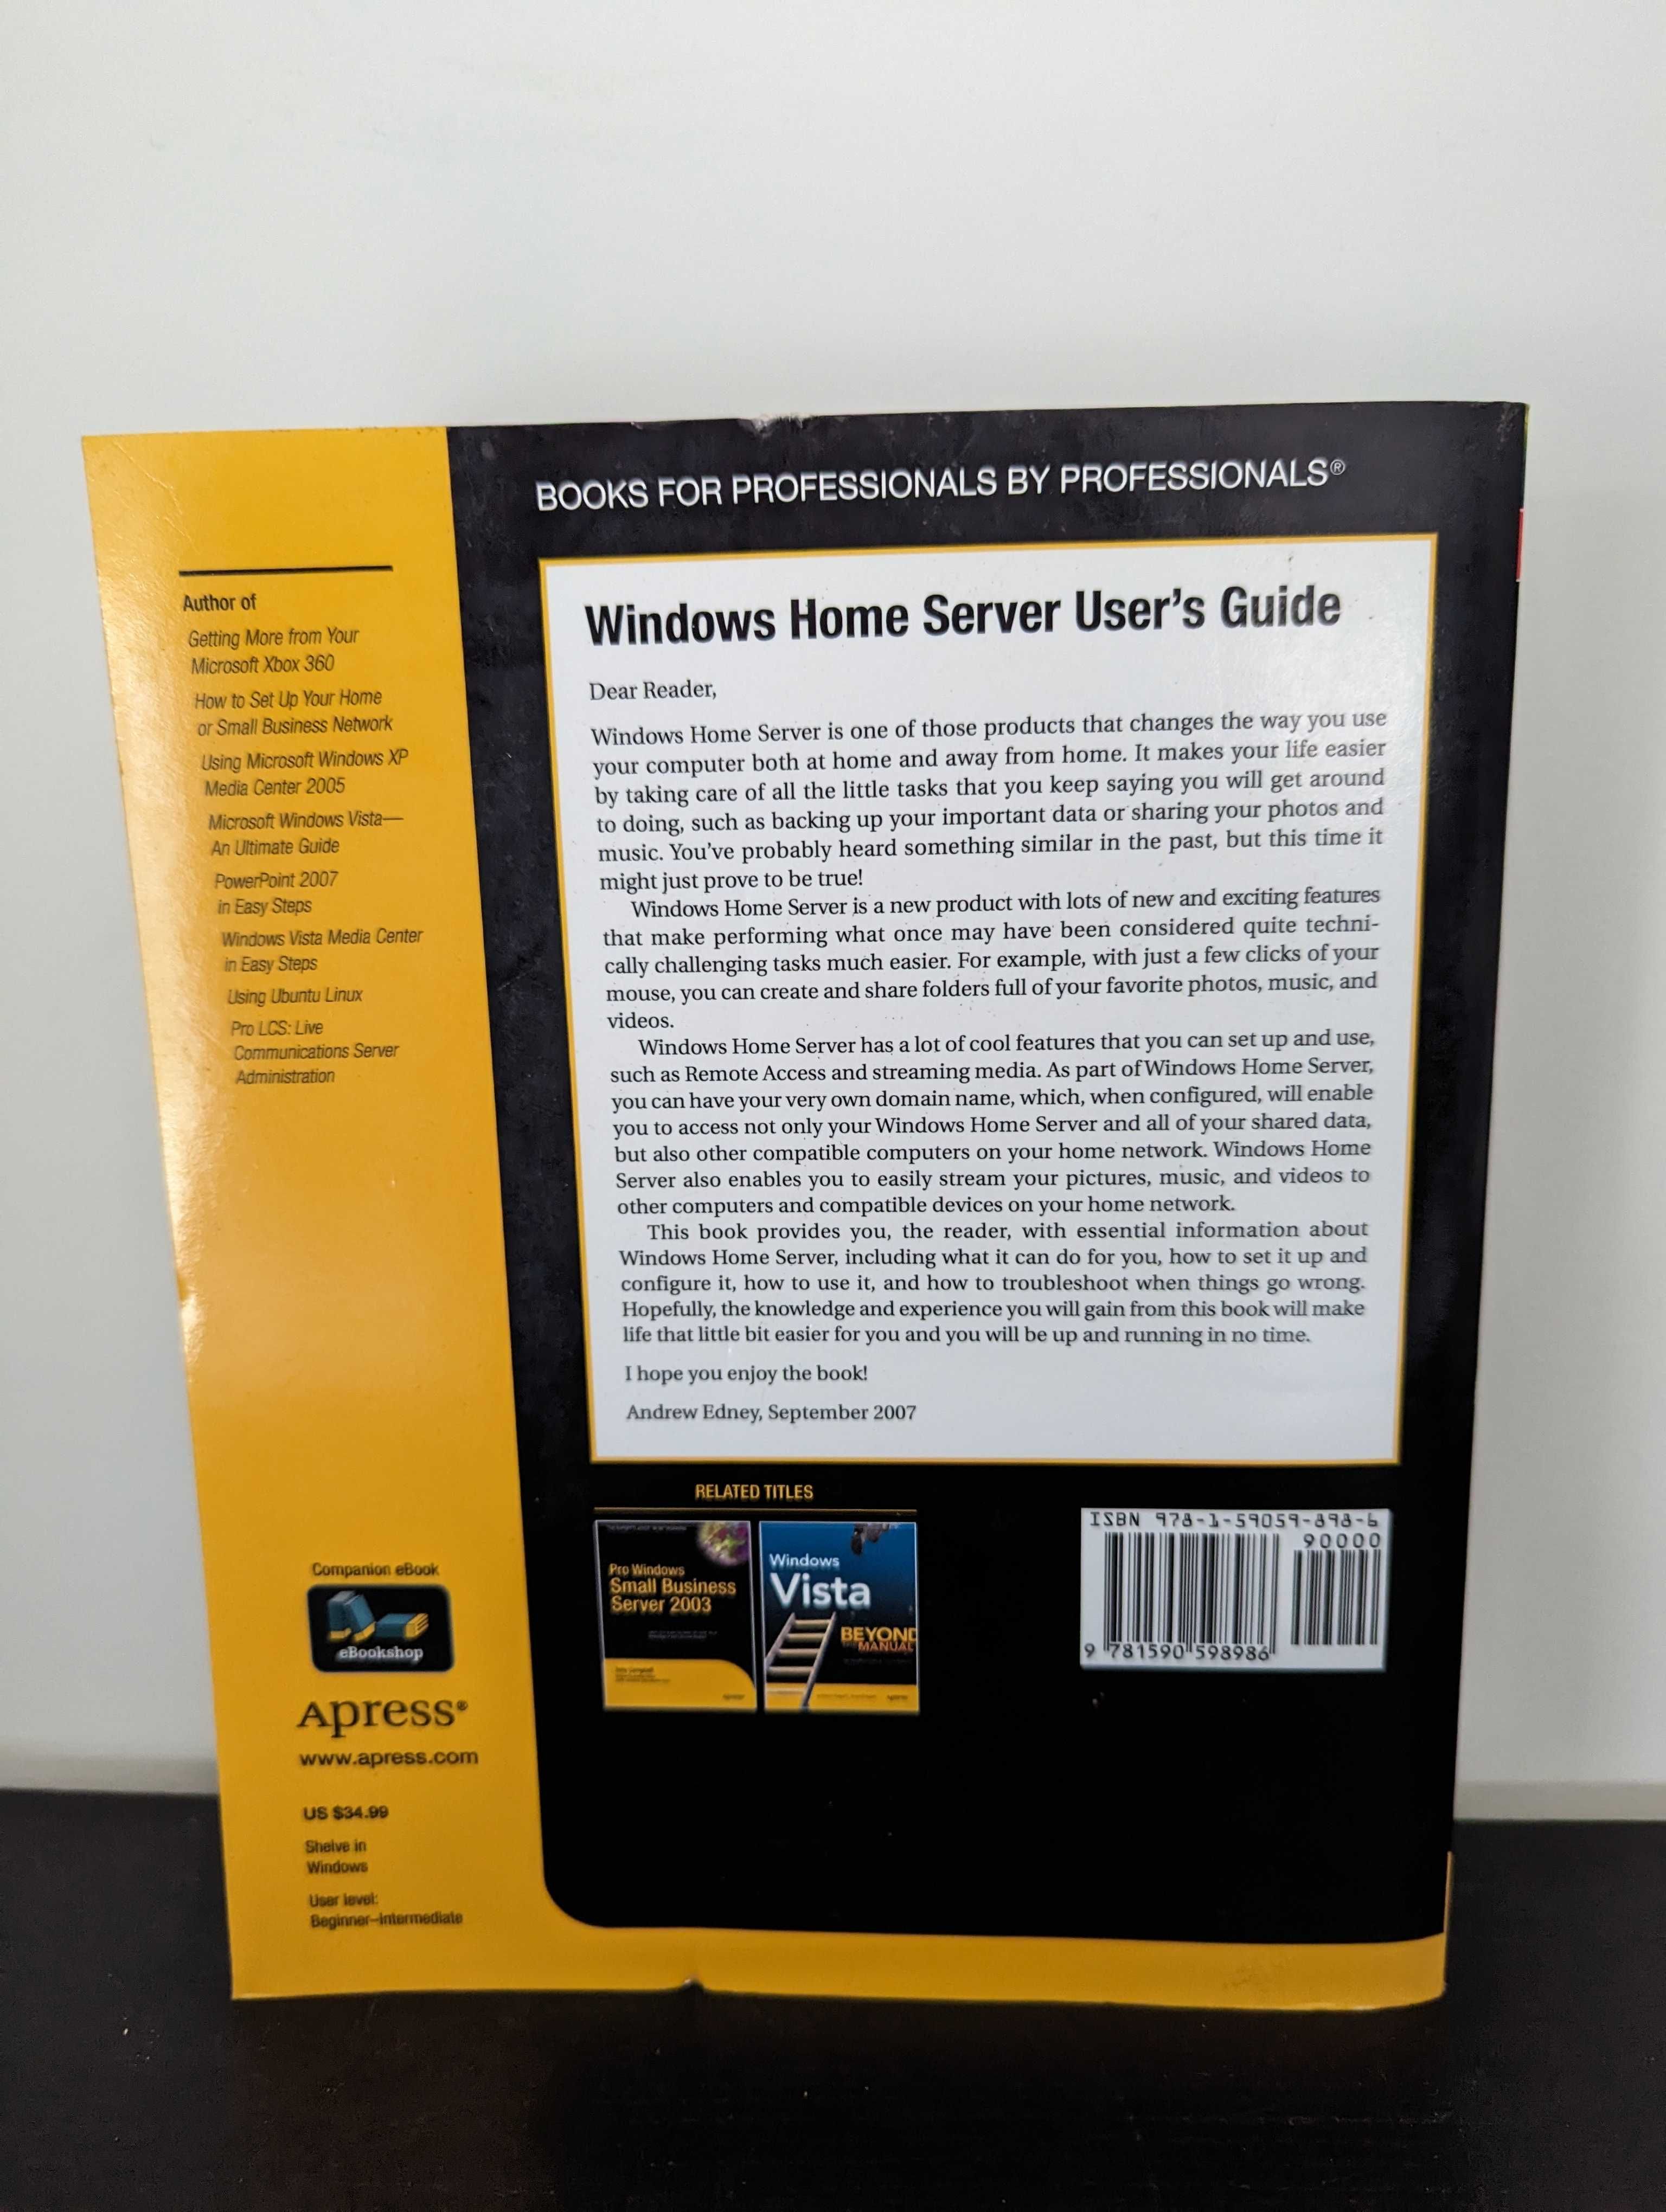 Windows Home Server - User's Guide - Andrew Edney